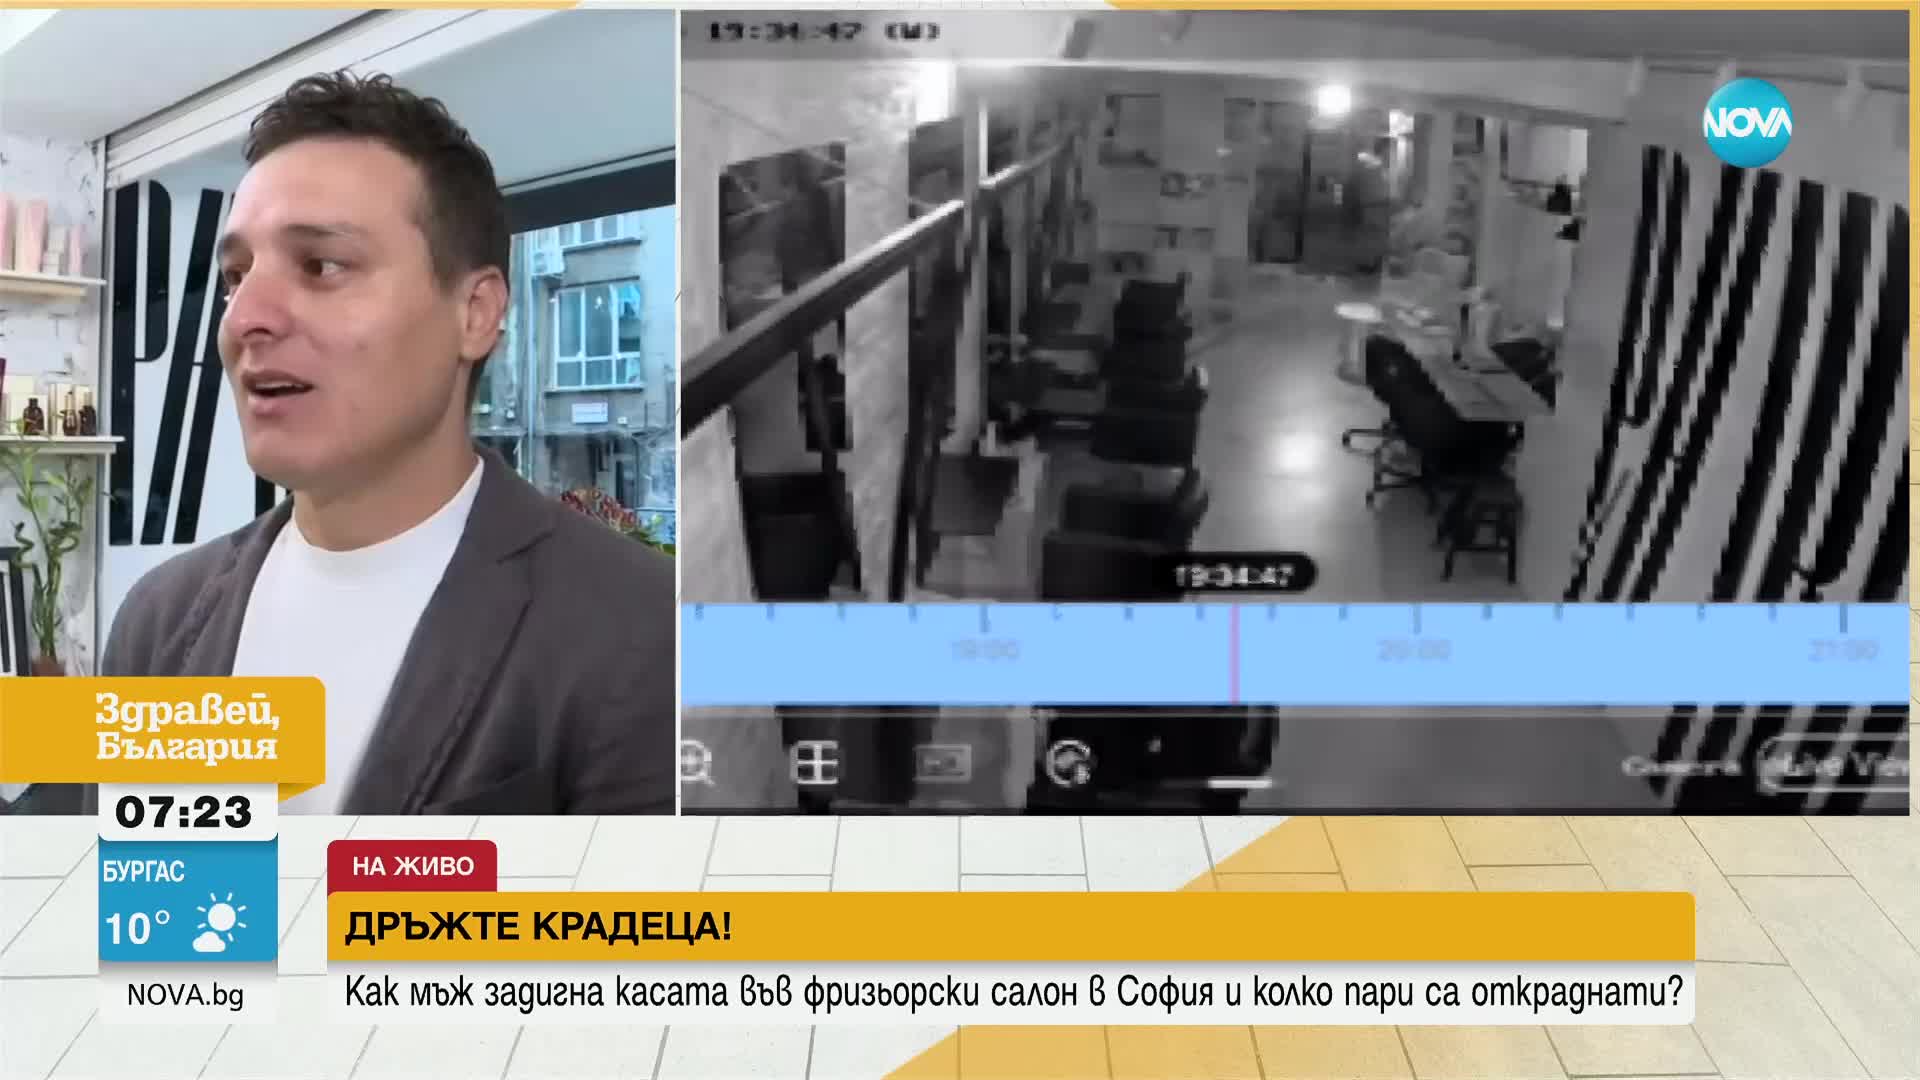 "Дръжте крадеца": Мъж открадна касата на фризорски салон в центъра на София